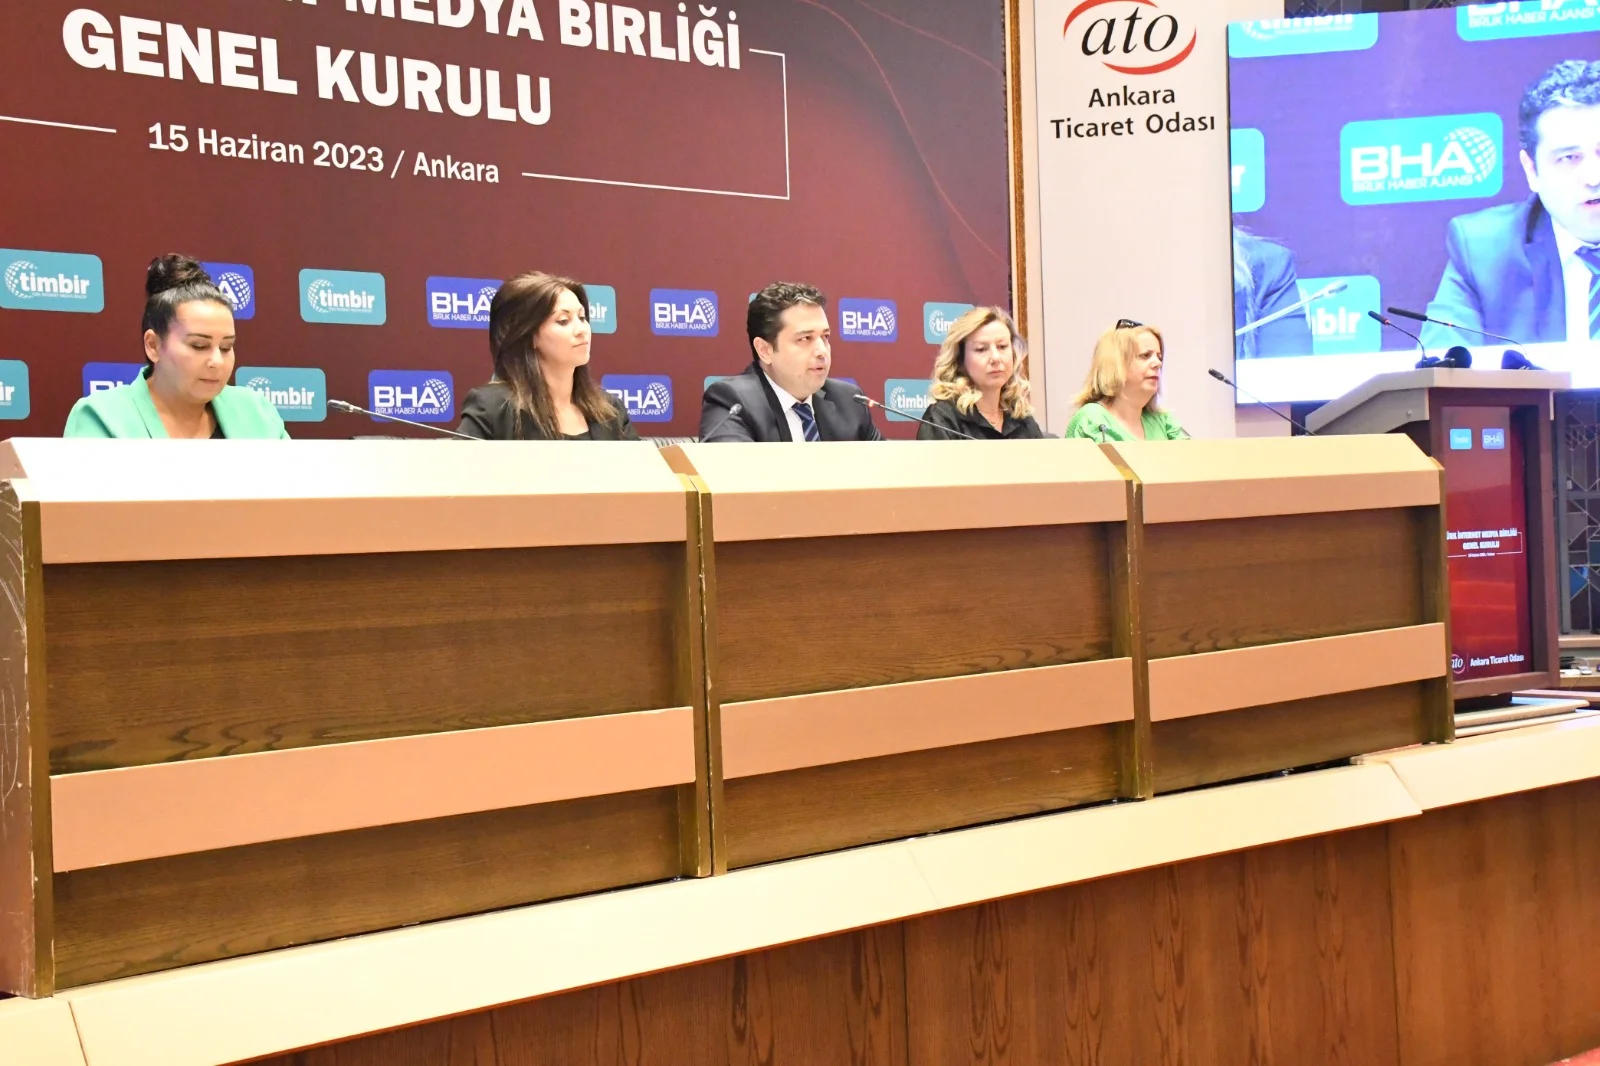 Türk İnternet Medya Birliği Genel Kurulu yapıldı, yeni yönetim belli oldu